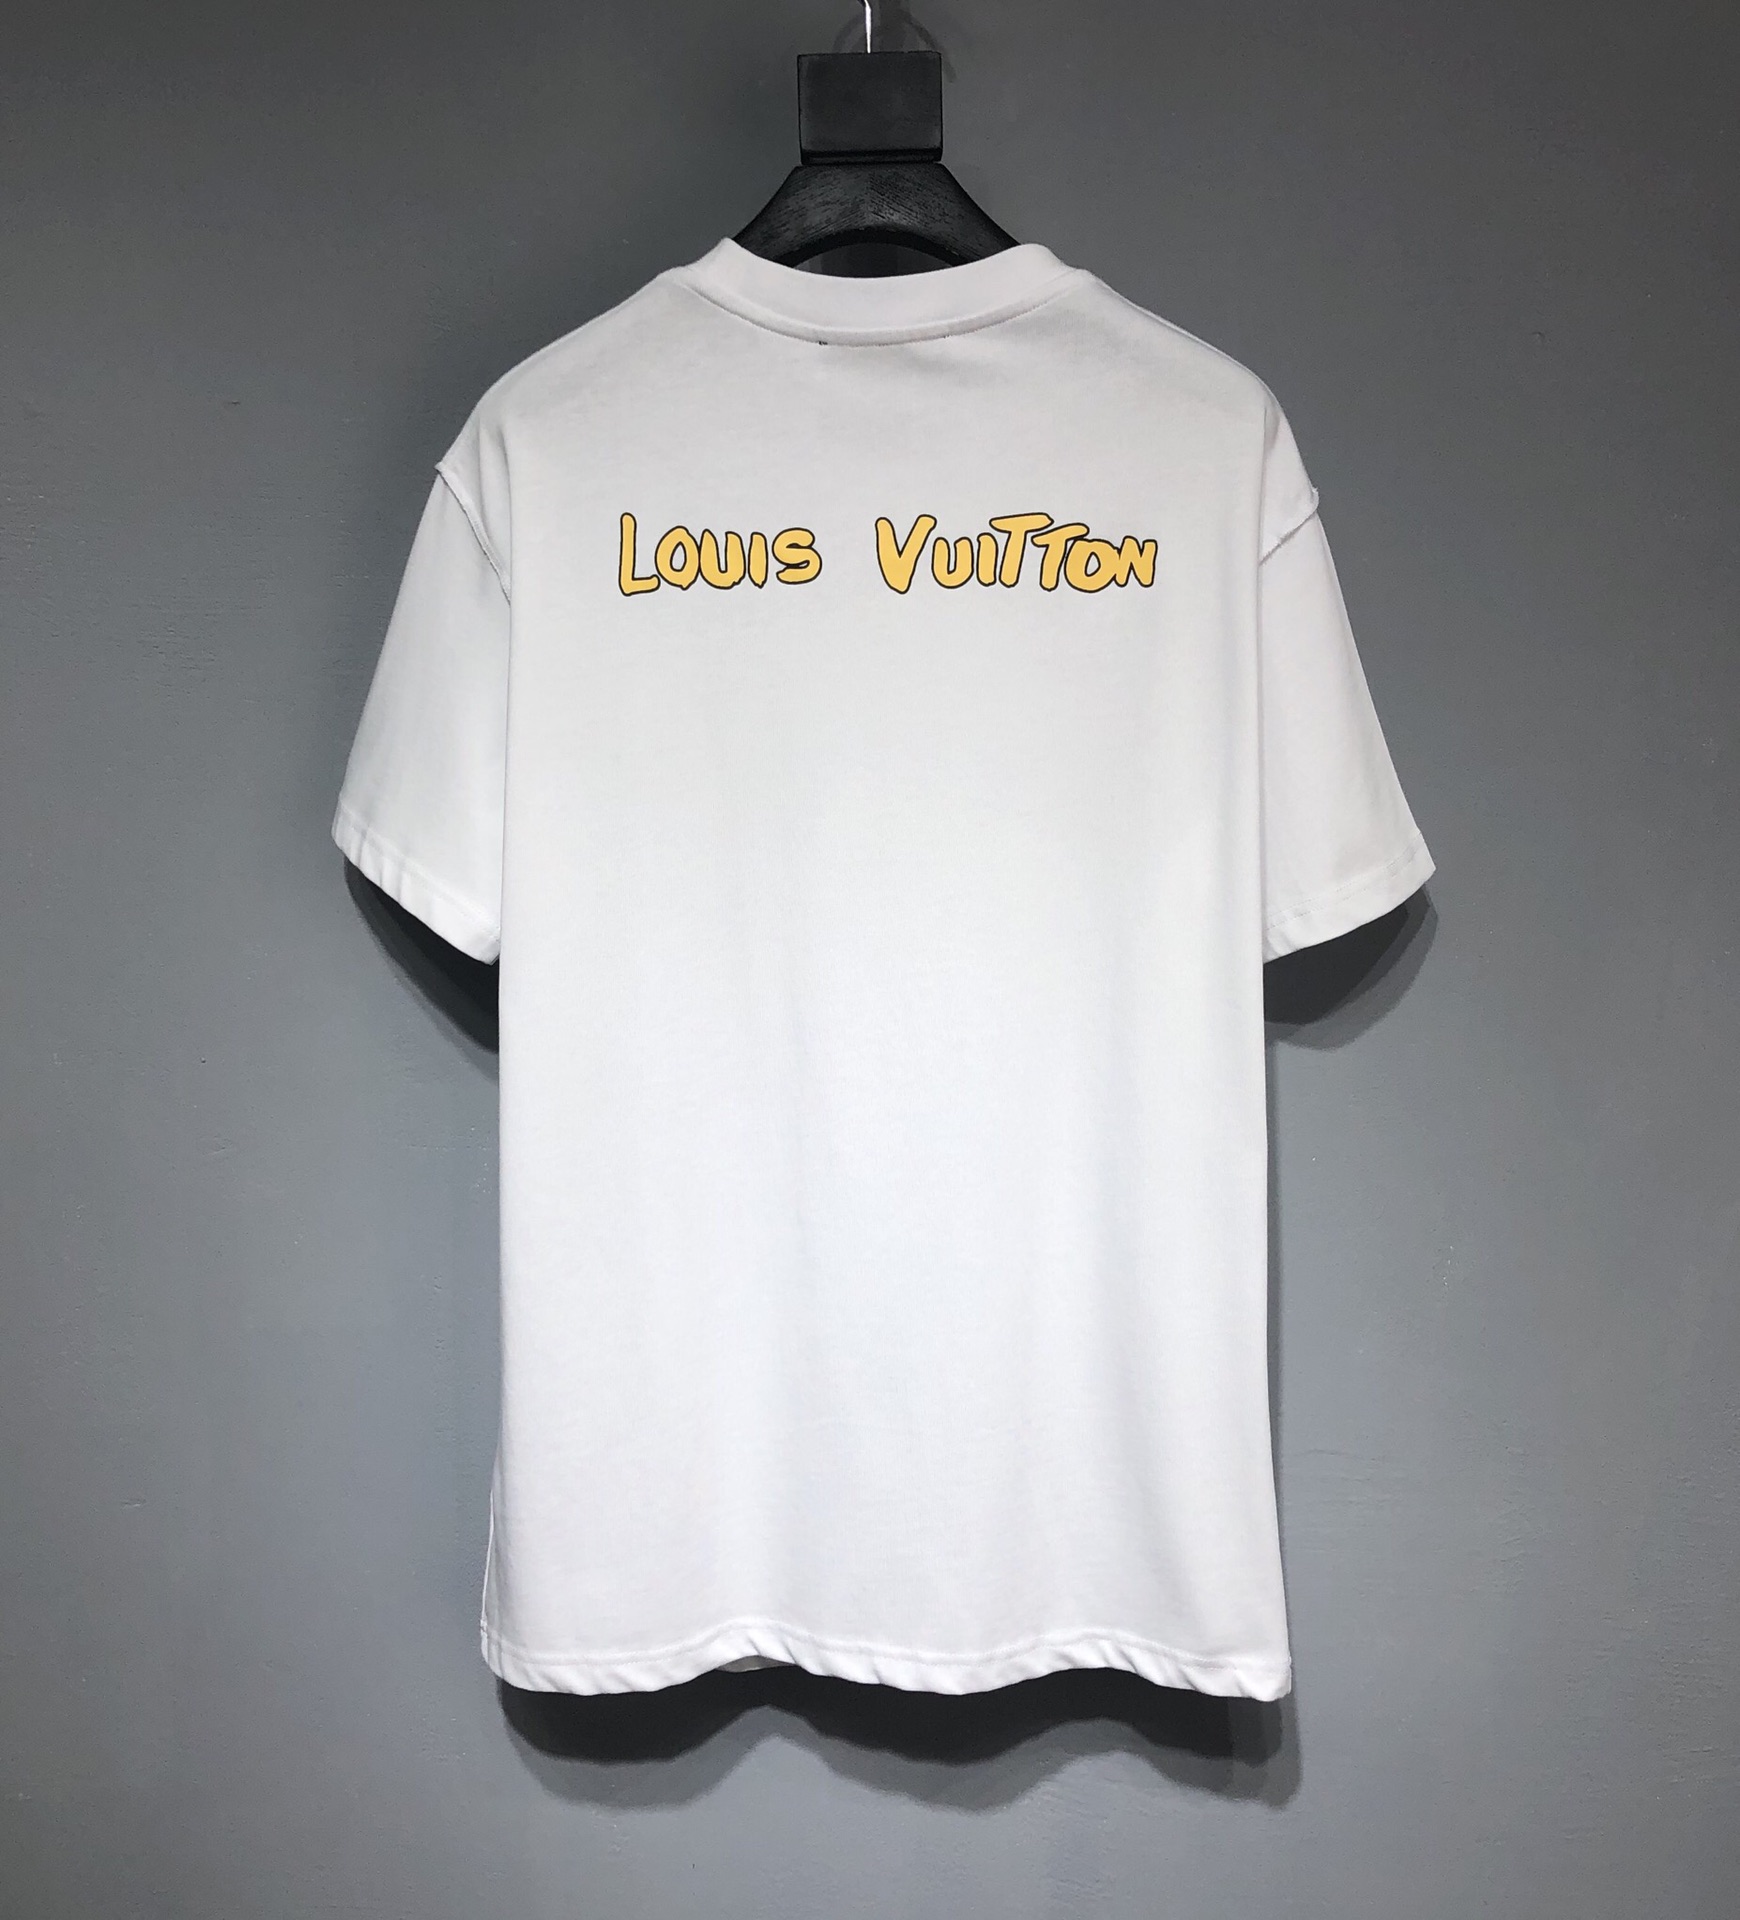 LV 2022SS new Tshirt